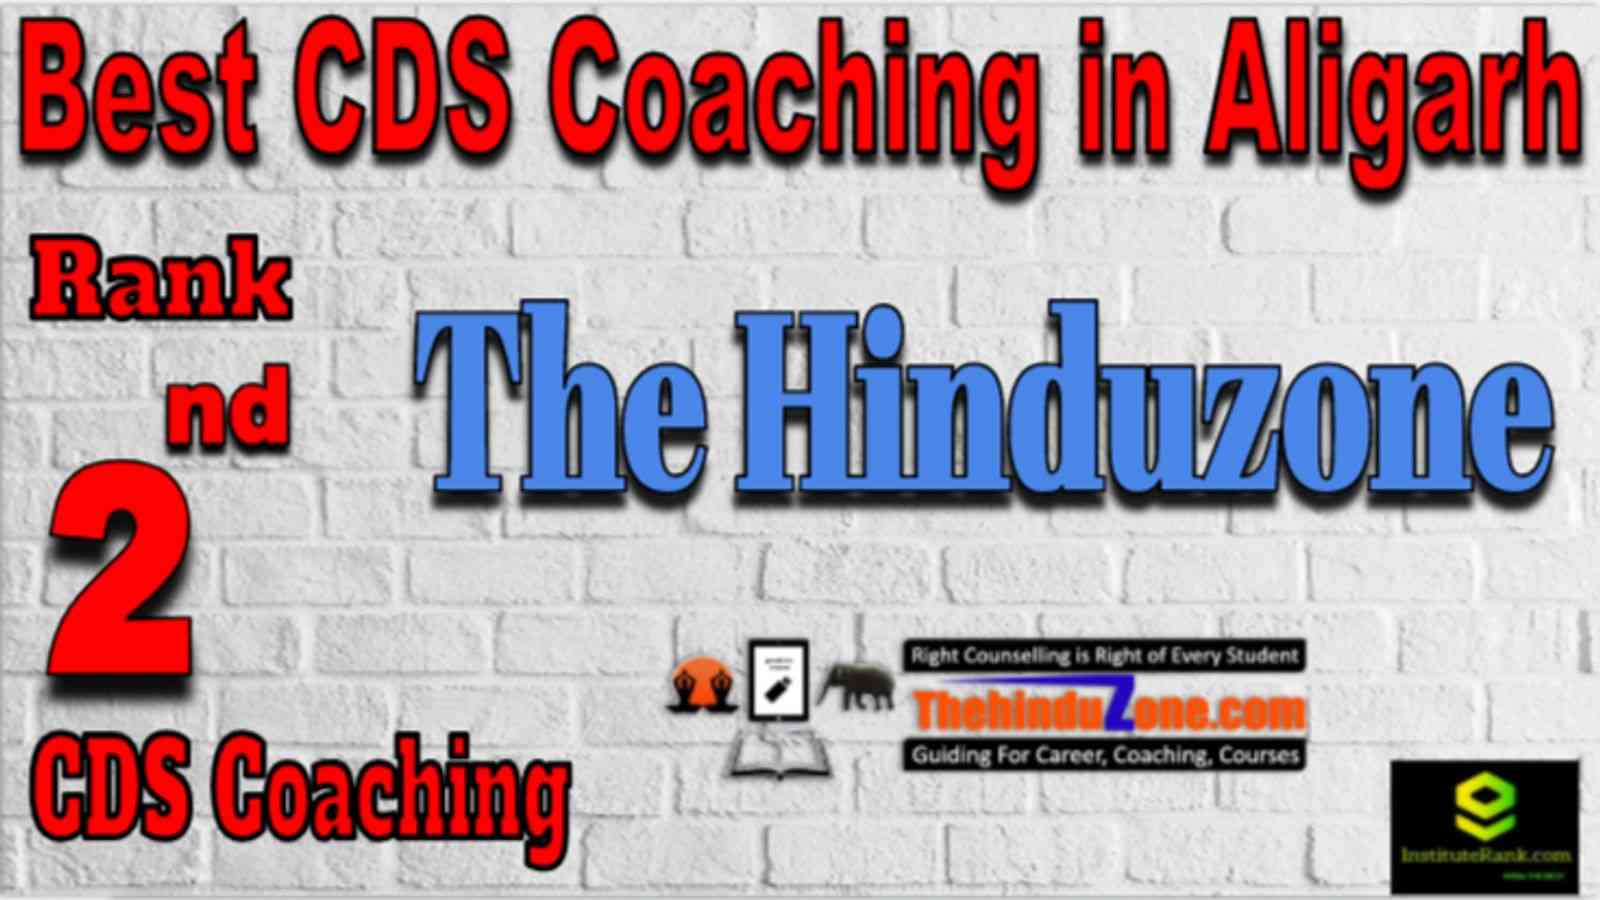 Rank 2 Best CDS Coaching in Aligarh